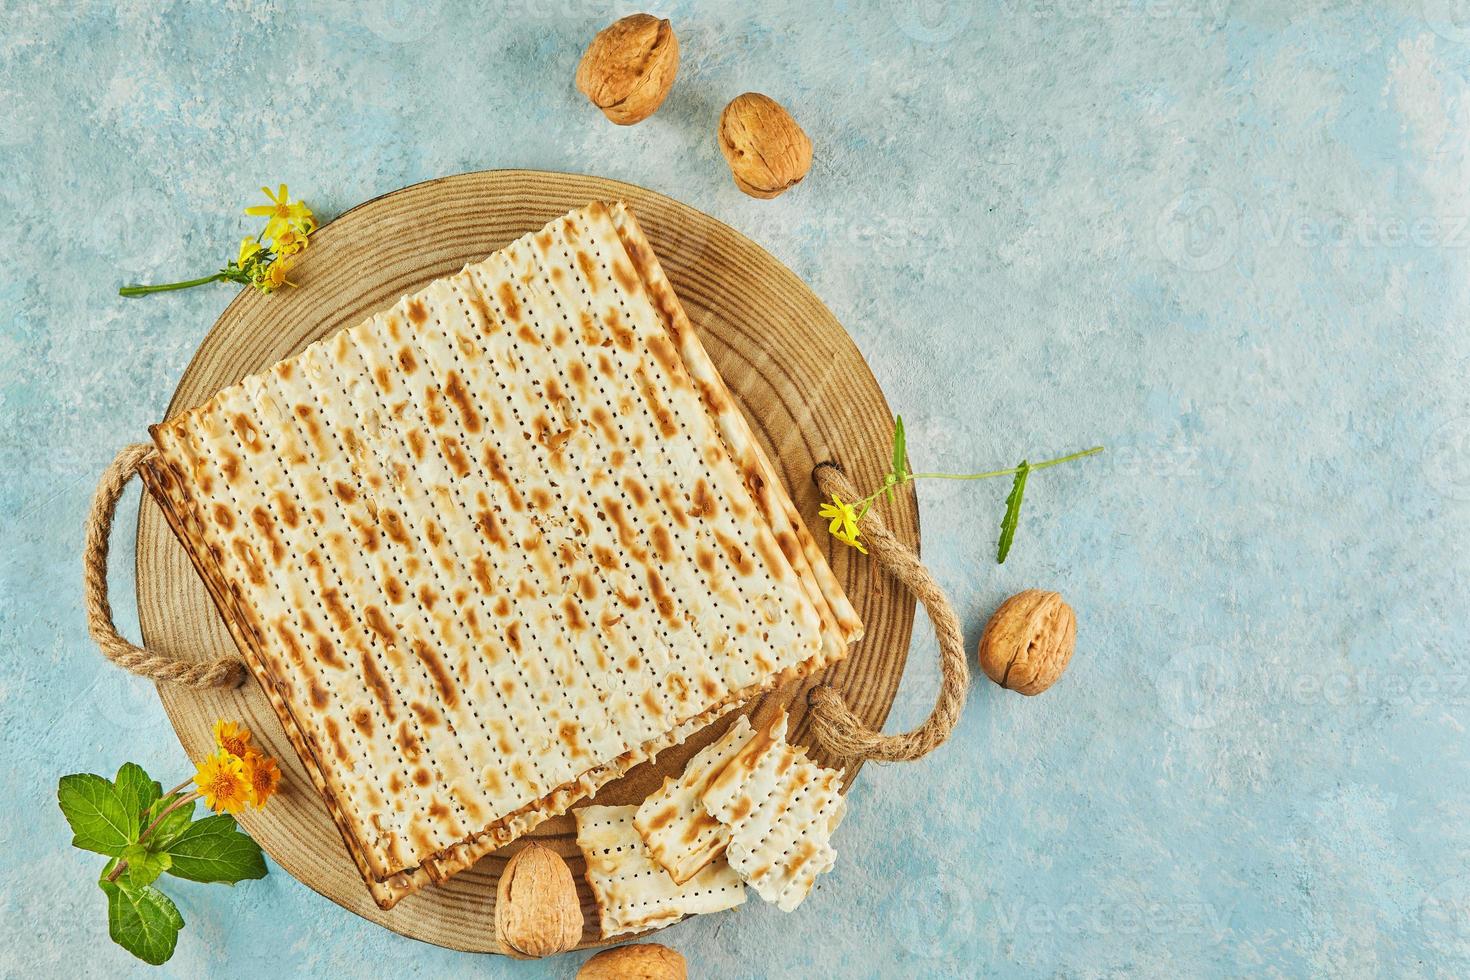 pesach firande koncept - judiska påskhelgen. matzah på träställning med nötter och vilda blommor foto